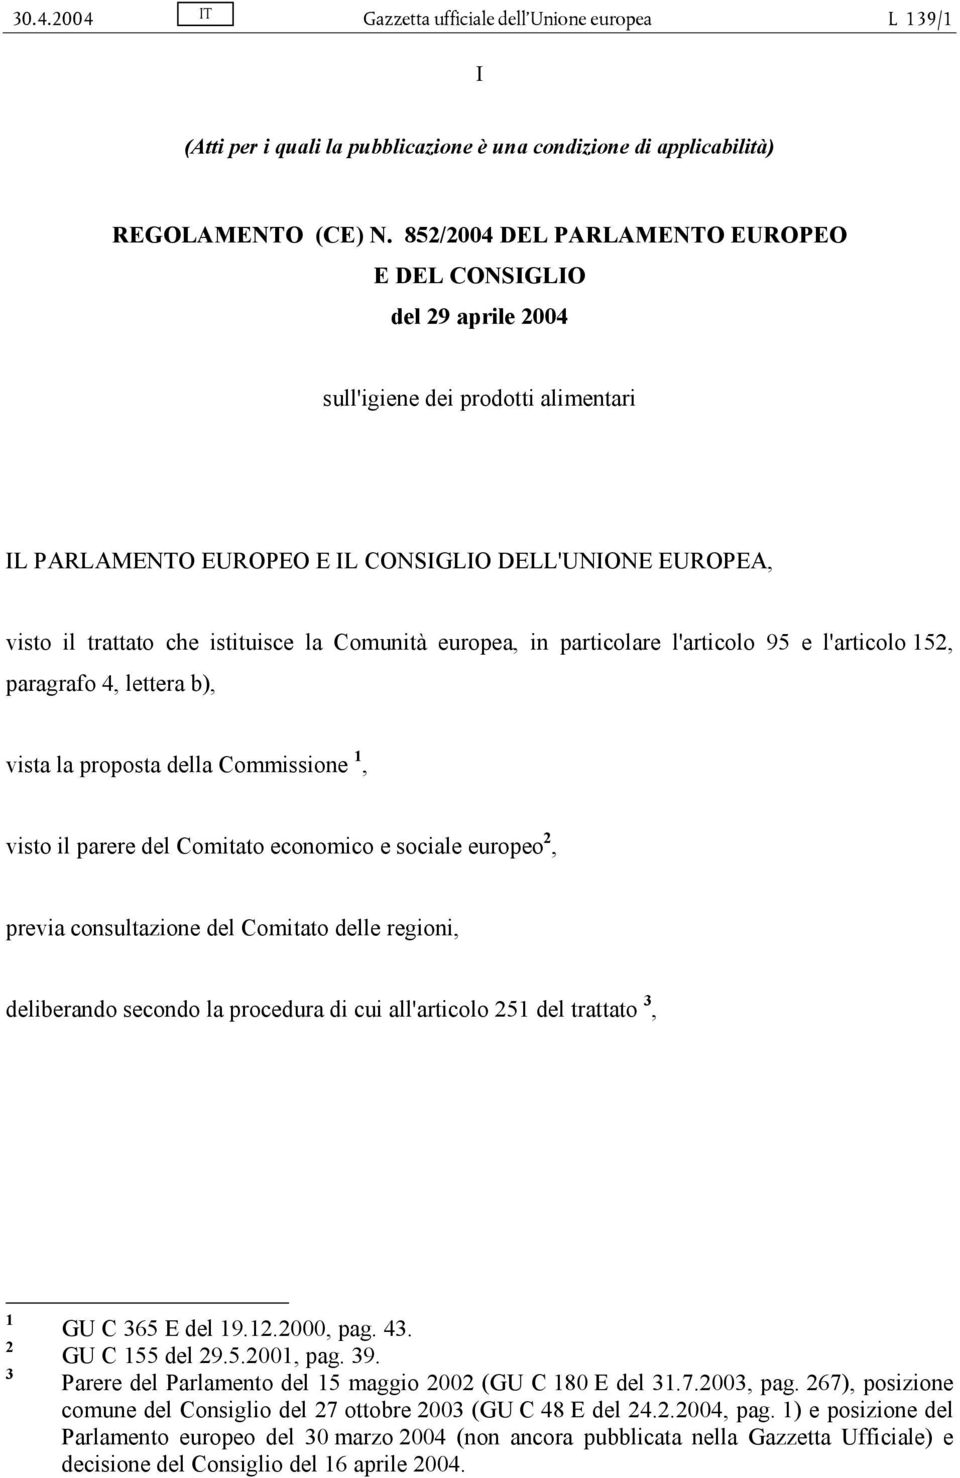 Comunità europea, in particolare l'articolo 95 e l'articolo 152, paragrafo 4, lettera b), vista la proposta della Commissione 1, visto il parere del Comitato economico e sociale europeo 2, previa